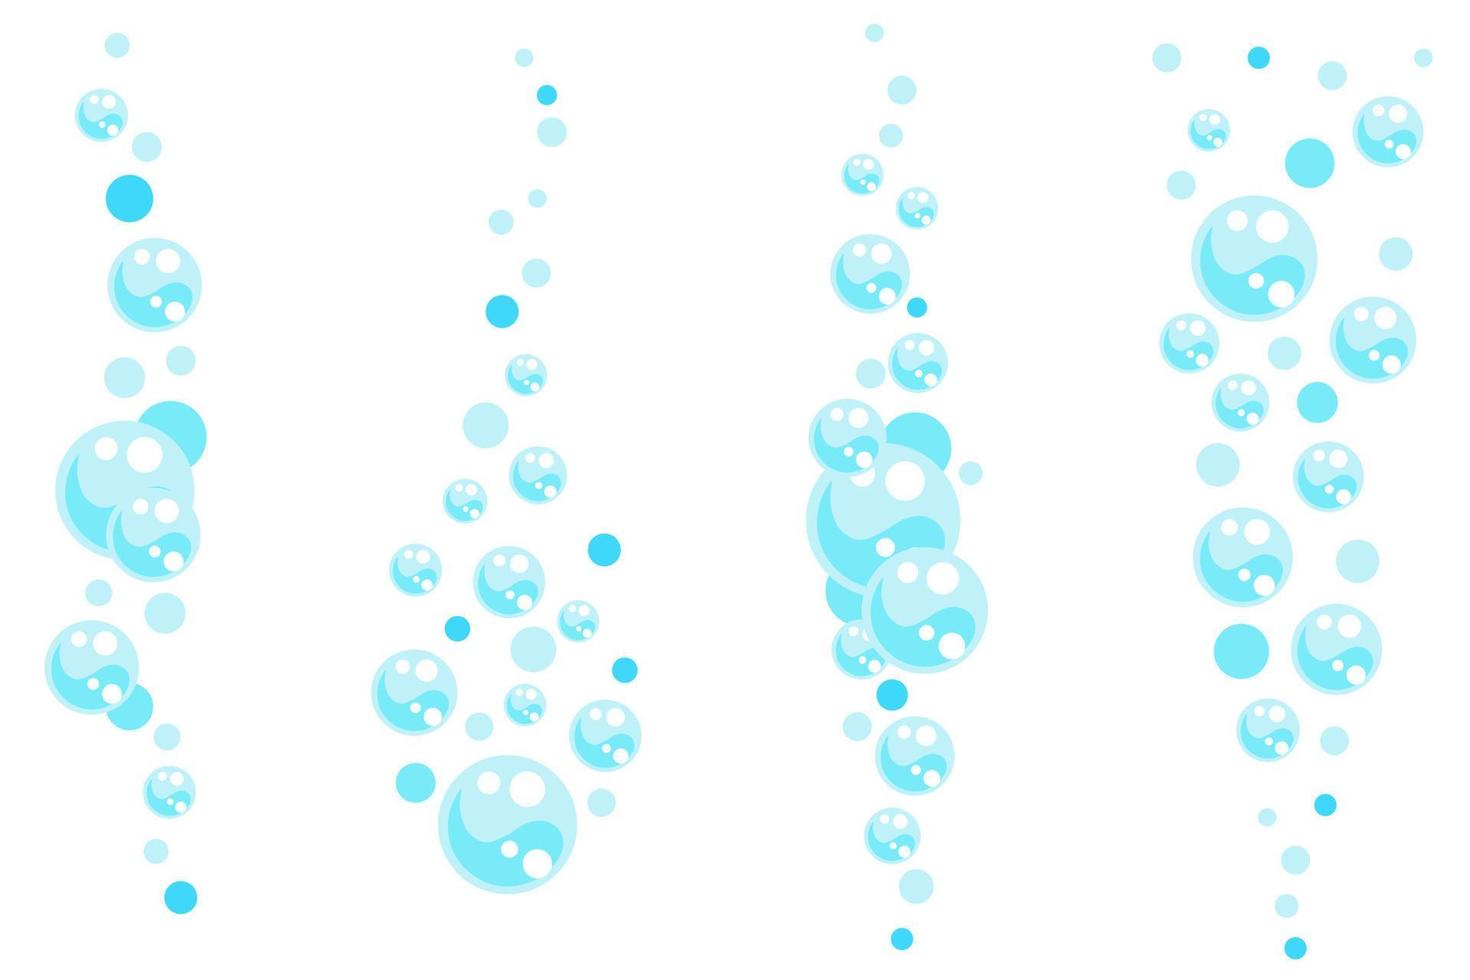 bolhas de refrigerante, ar ou sabão. fluxos verticais de água. ilustração do vetor dos desenhos animados.